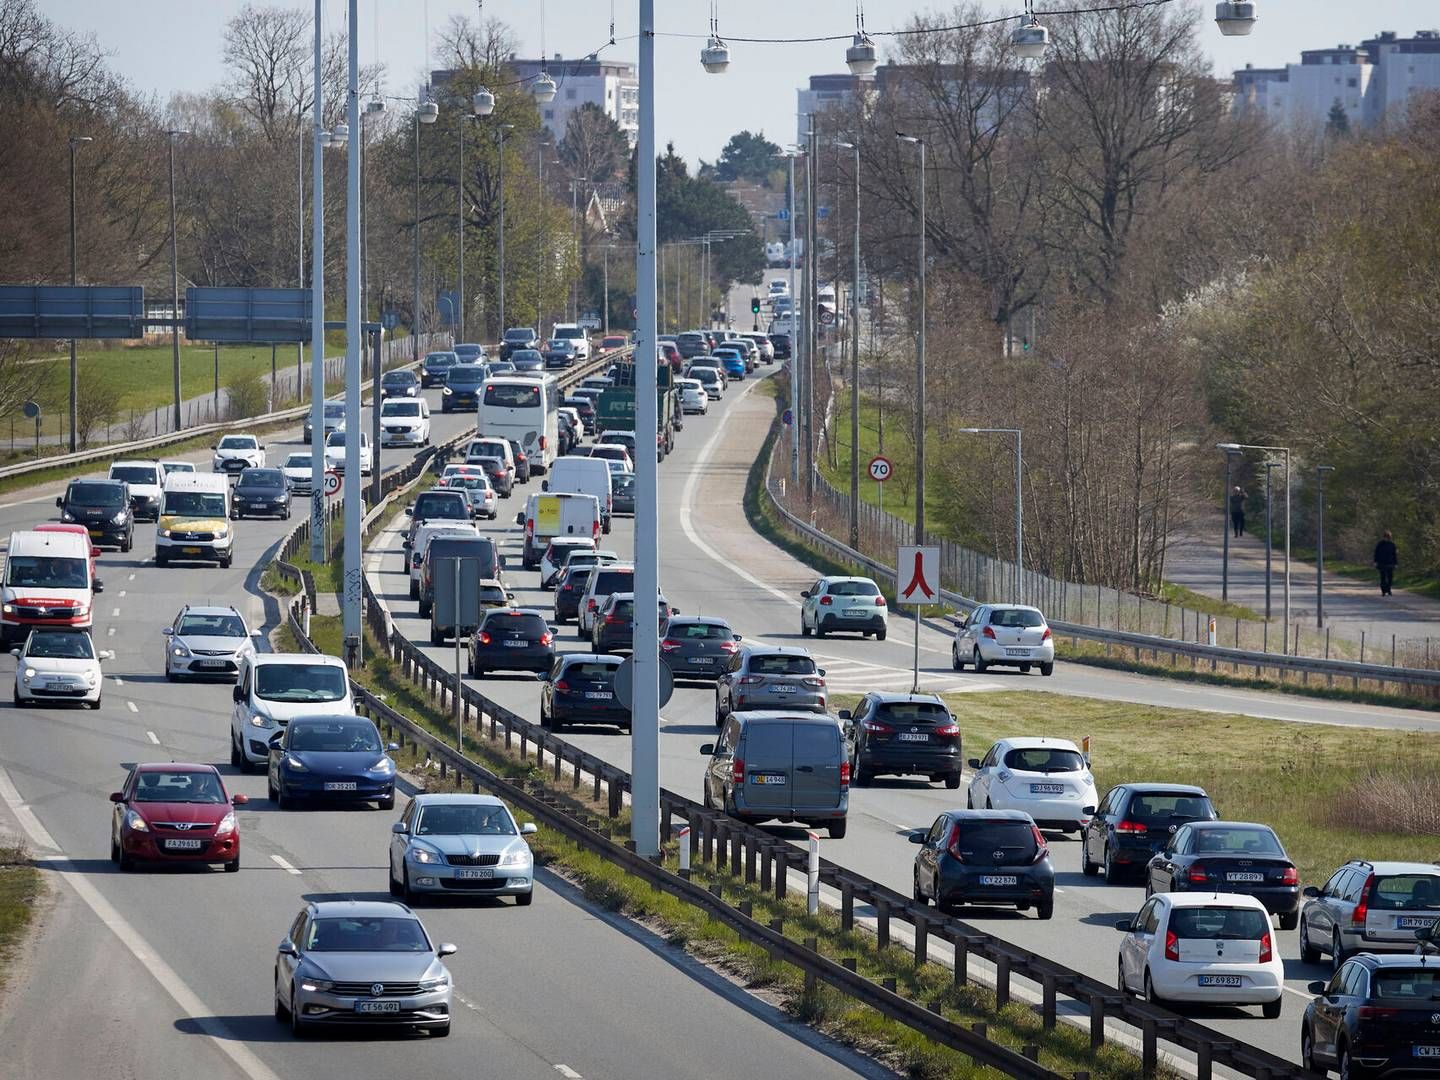 Det er blandt andet på grund af problemer med trængsel på vejen, at S-transportordfører Thomas Jensen ser positivt på en mulig mobilitetsplan. | Foto: Jens Dresling/Ritzau Scanpix